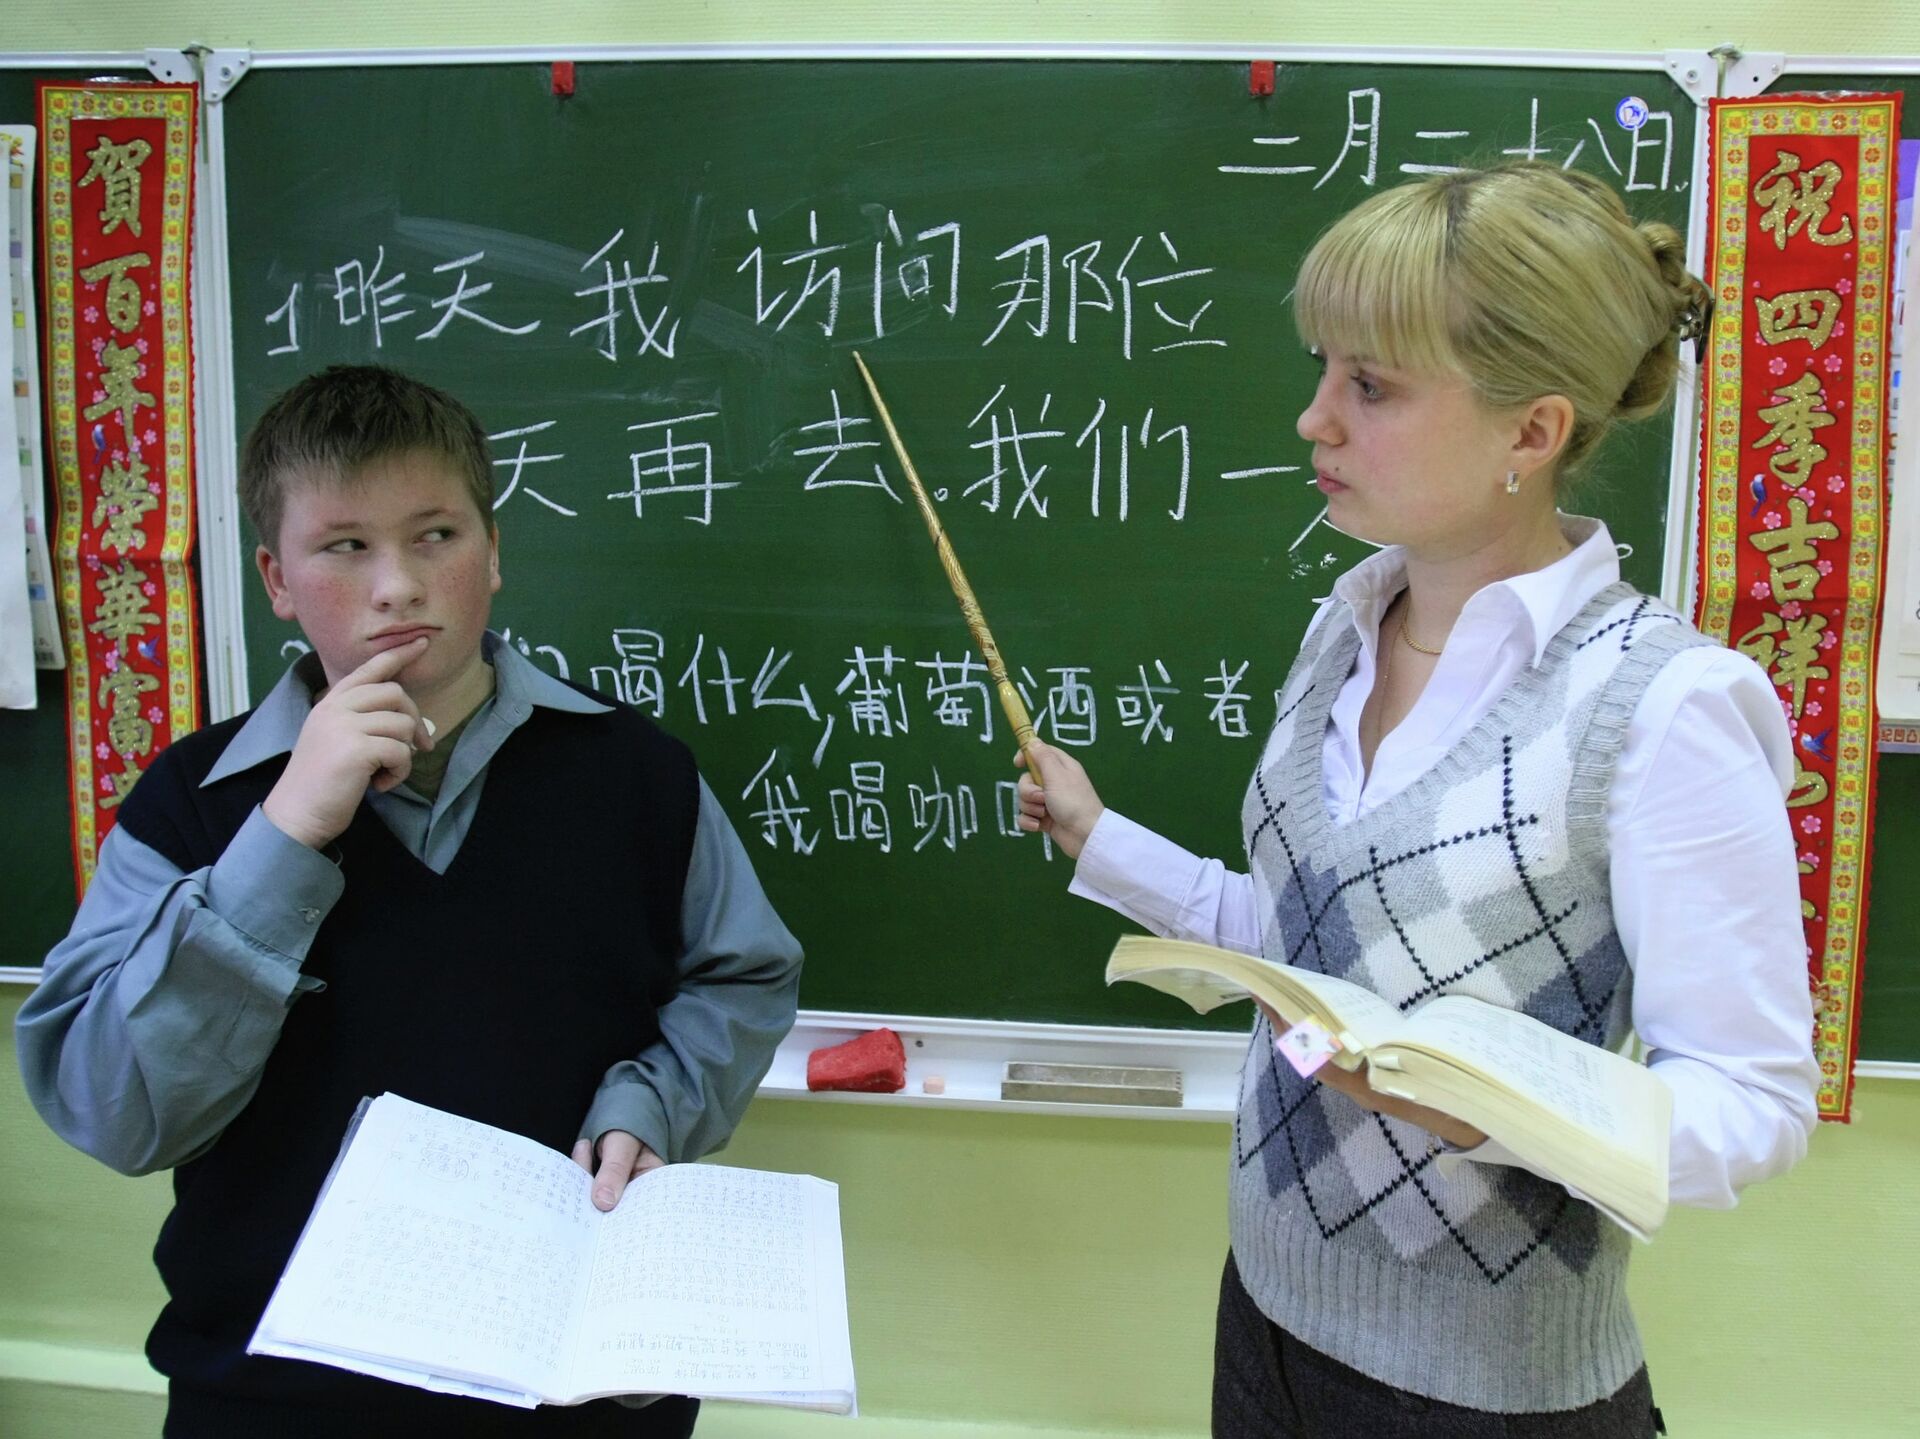 В школе китайский изучает 60 учащихся. ЕГЭ по китайскому языку. Вводный урок китайского. ЕГЭ китайский язык. Кто изучает китайский в гимназии 1 Иркутск.